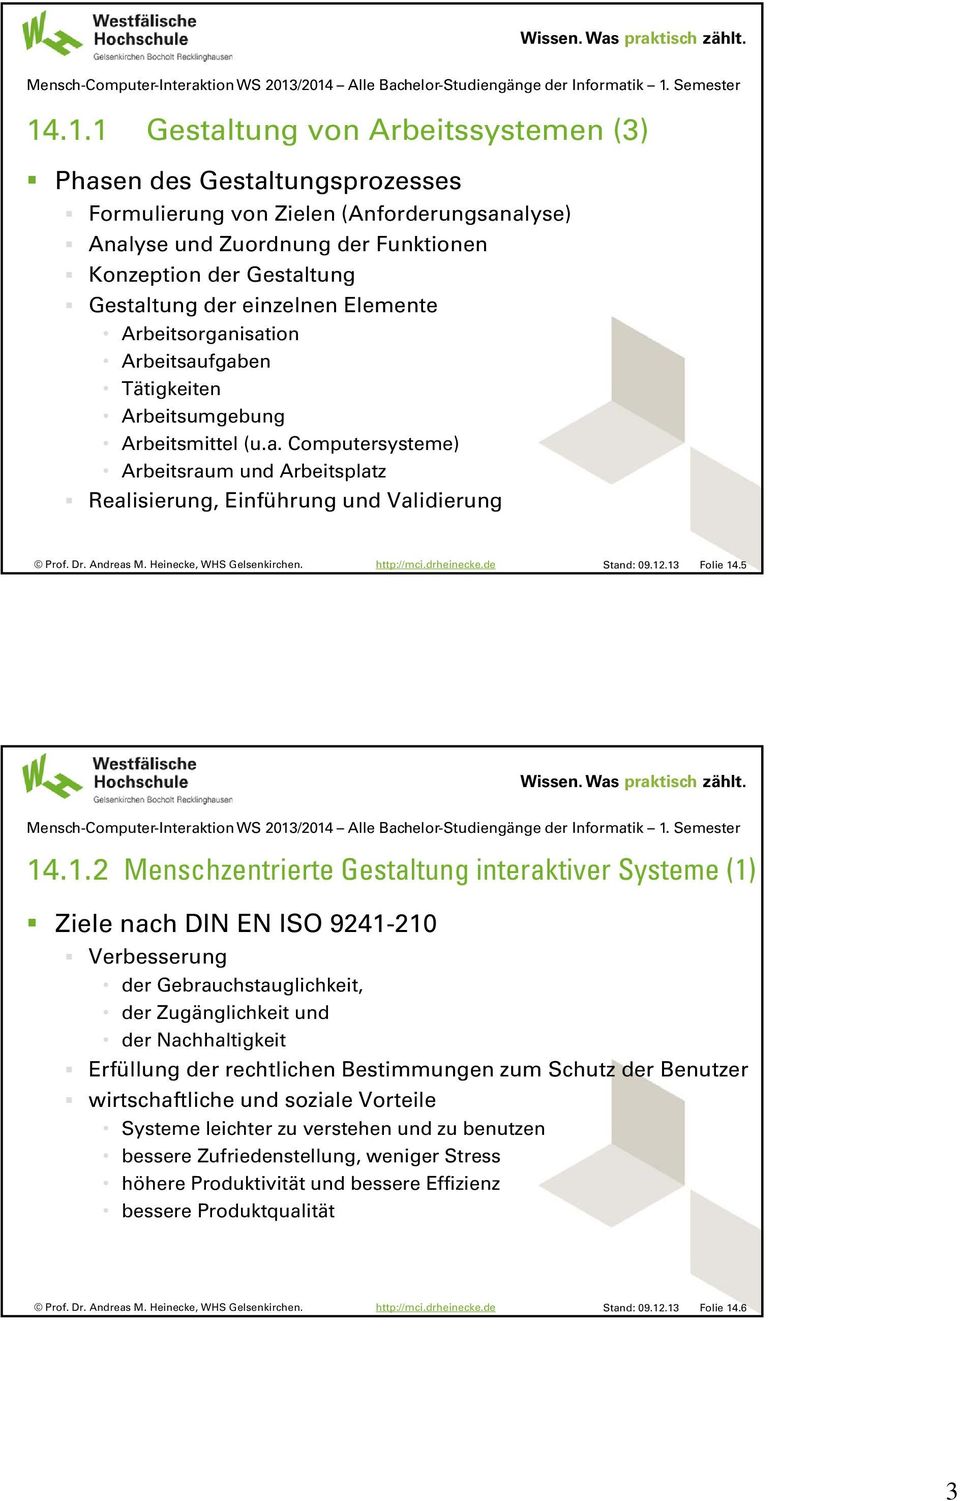 12.13 Folie 14.5 14.1.2 Menschzentrierte Gestaltung interaktiver Systeme (1) Ziele nach DIN EN ISO 9241-210 Verbesserung der Gebrauchstauglichkeit, der Zugänglichkeit und der Nachhaltigkeit Erfüllung